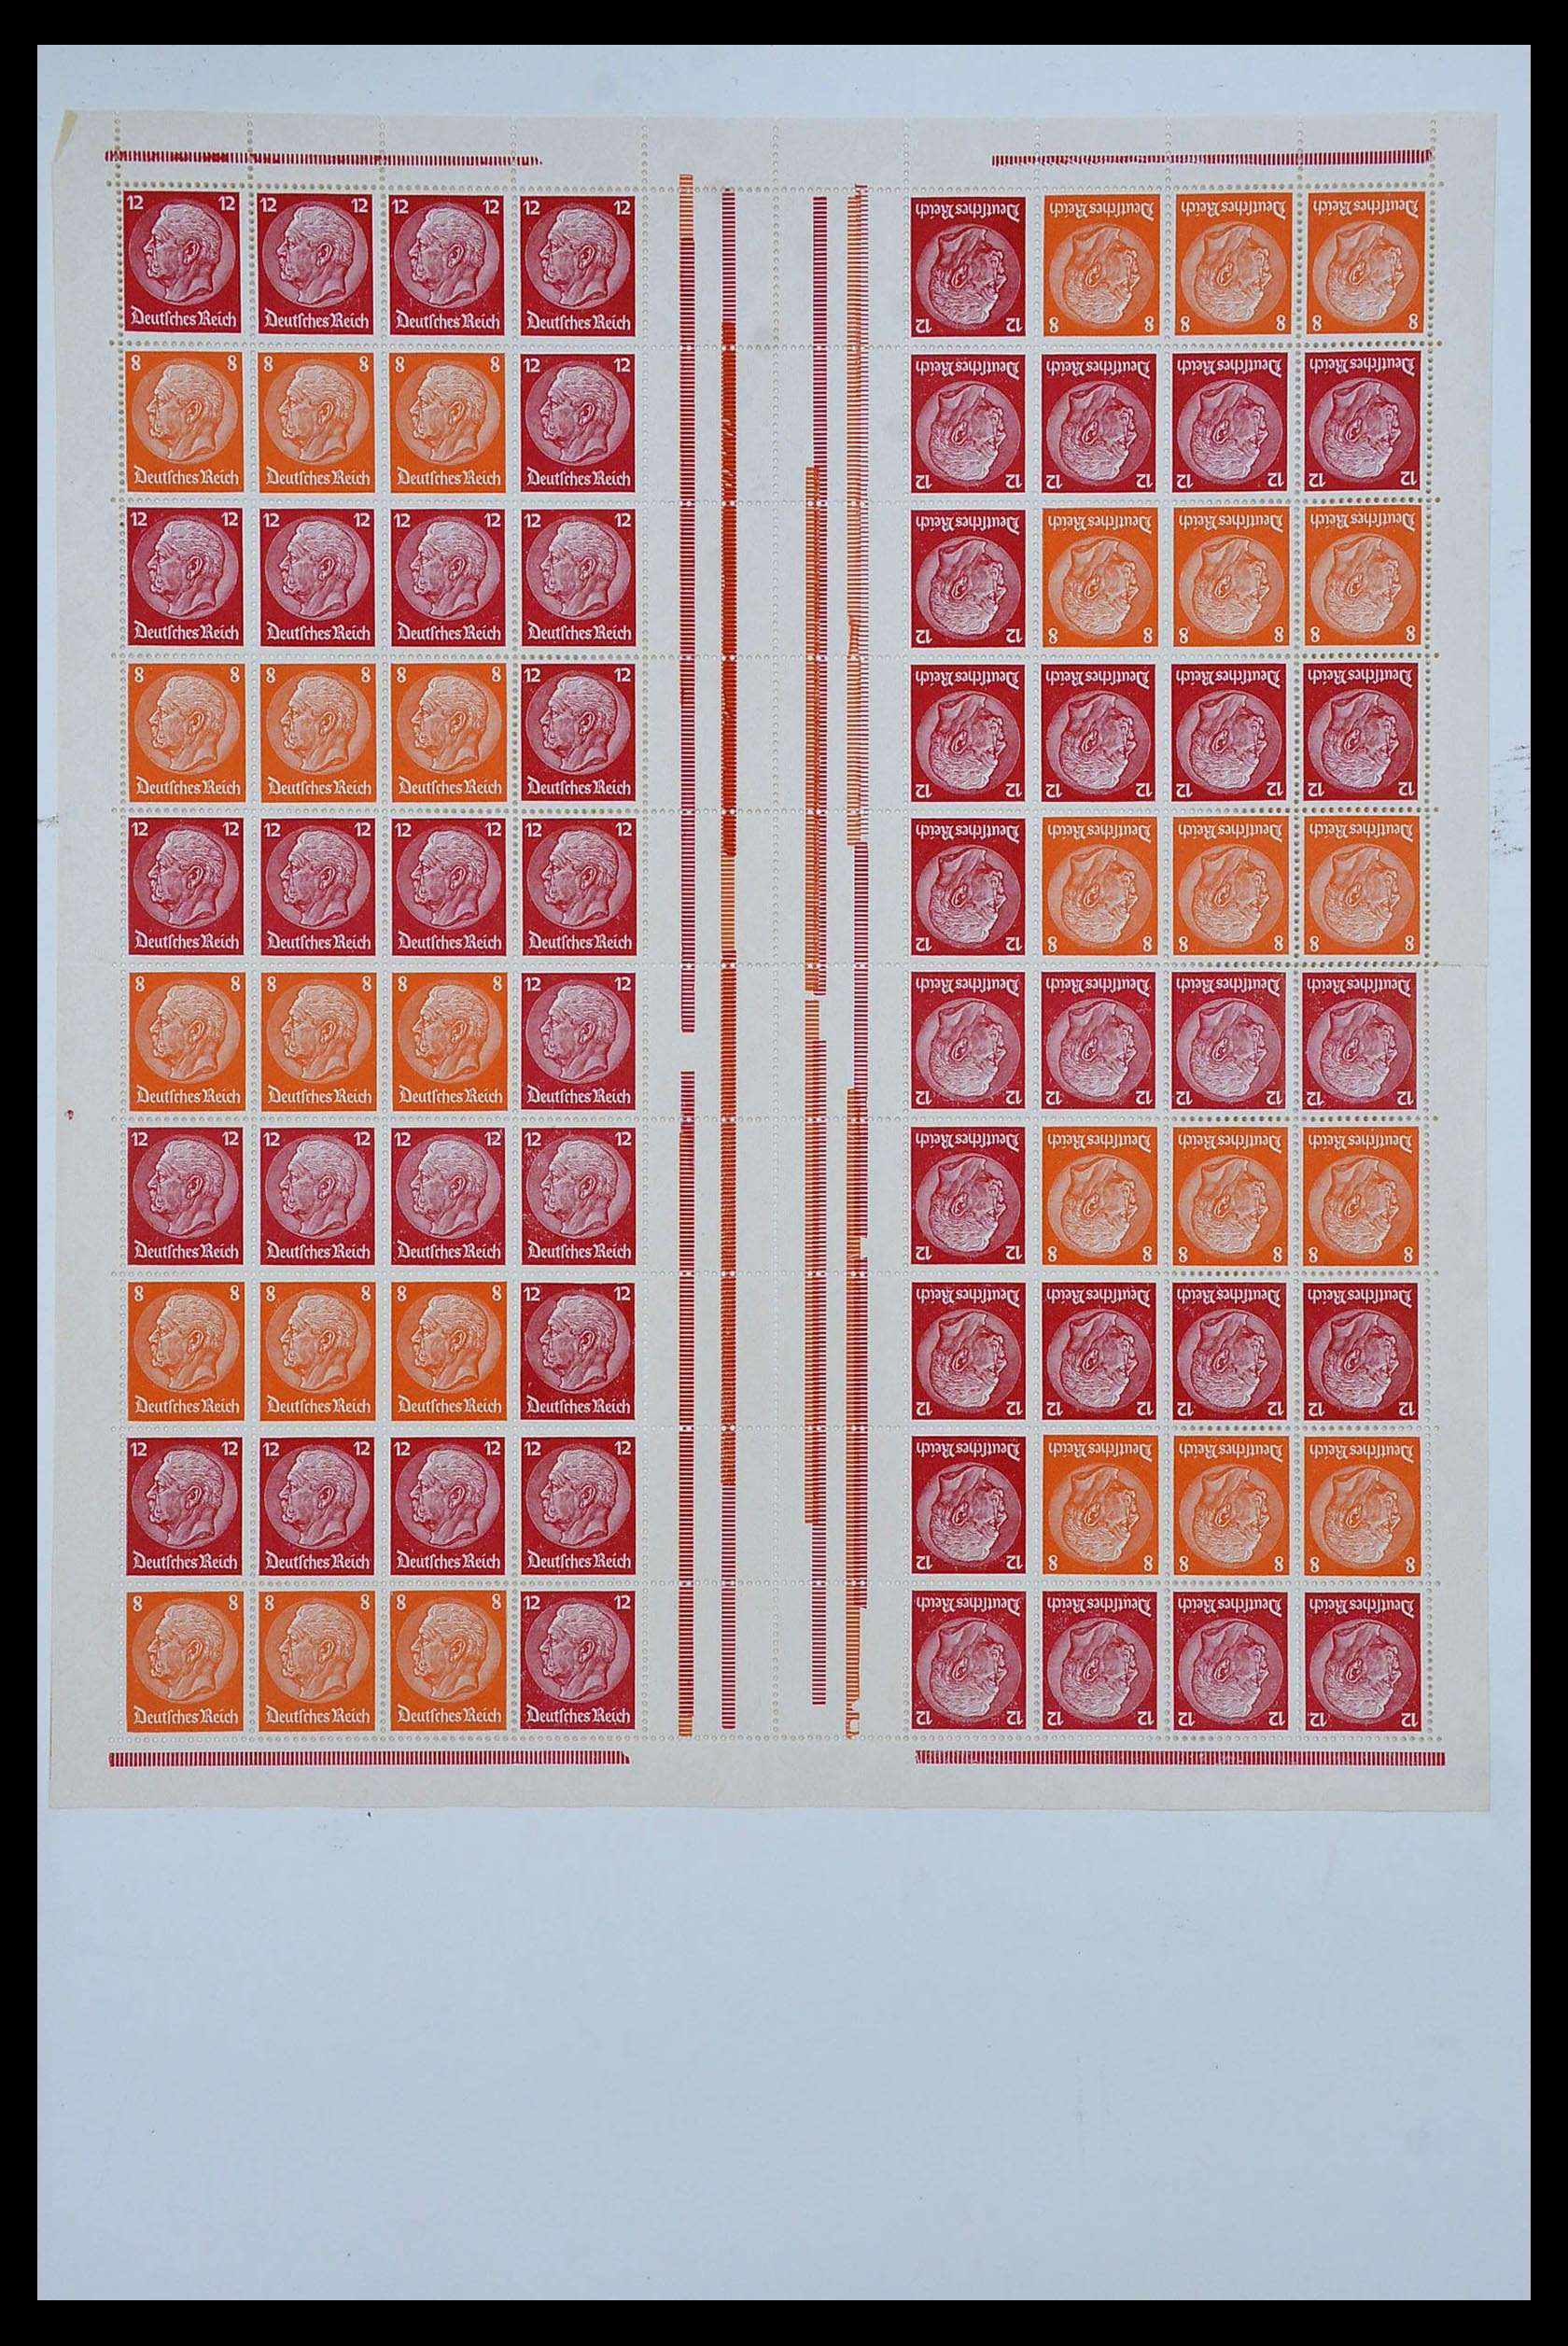 34164 007 - Stamp collection 34164 German Reich Markenheftchenbogen 1933-1942.